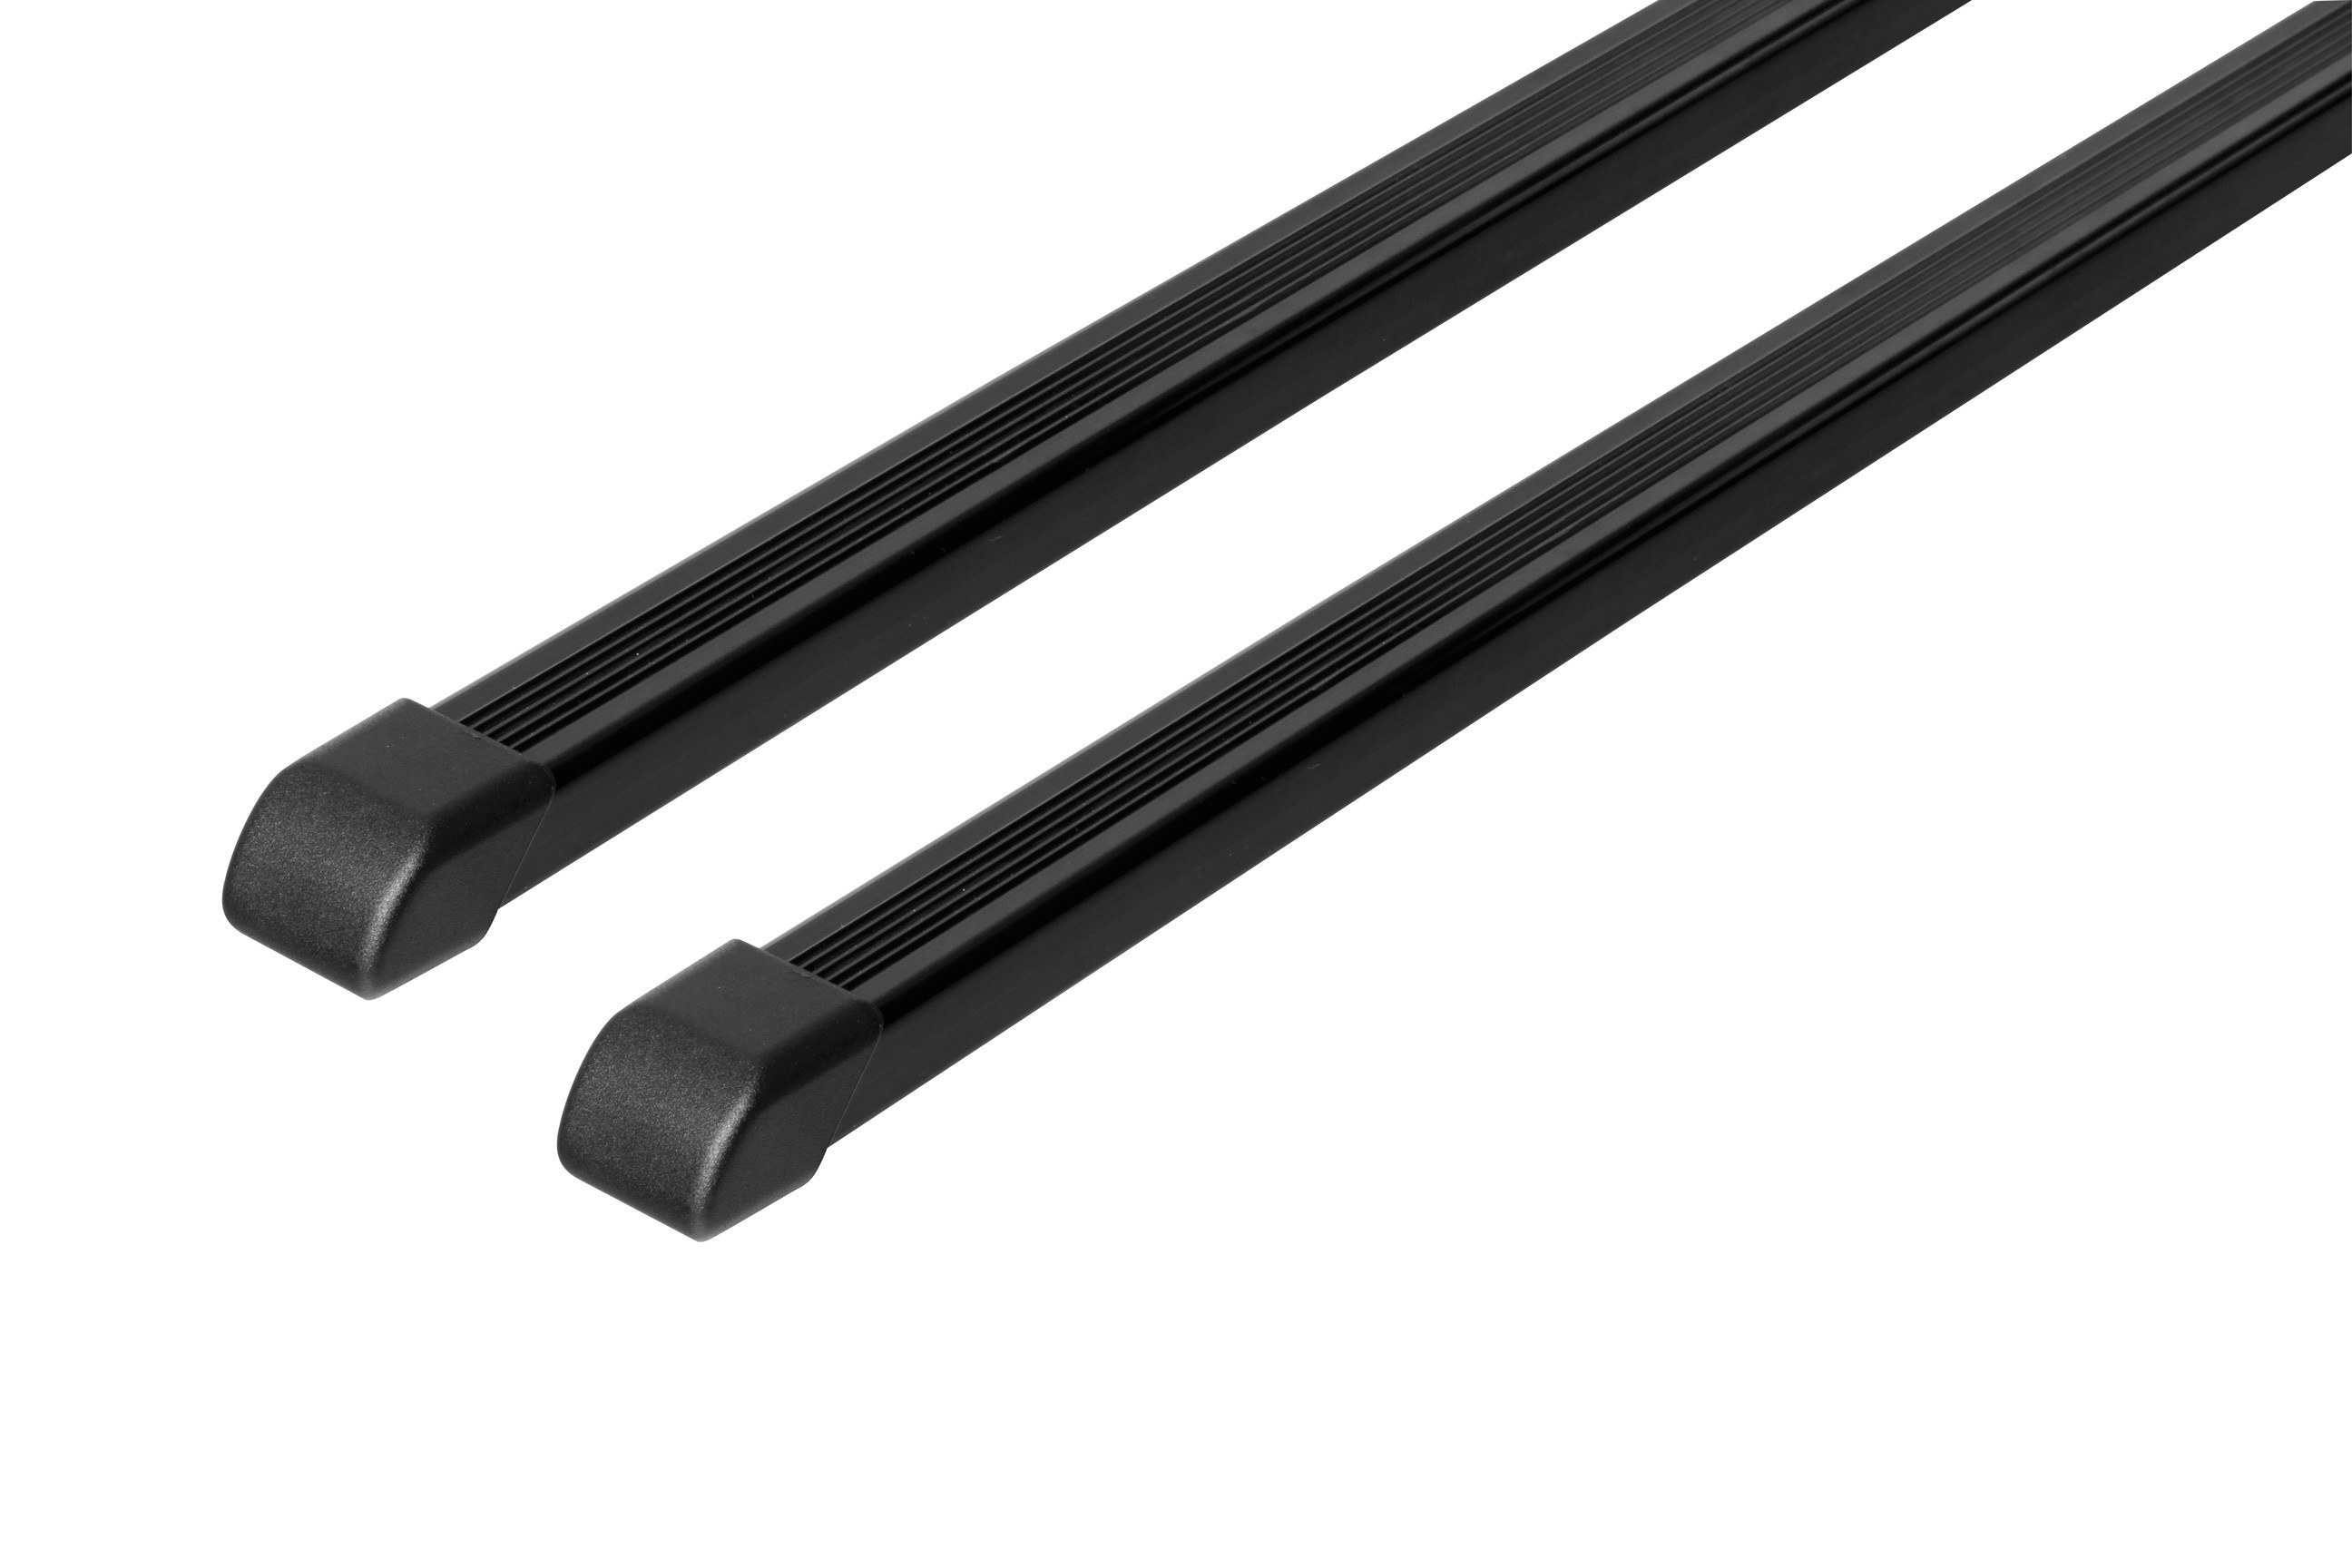 Quadra, pair of steel roof bars - L - 127 cm thumb